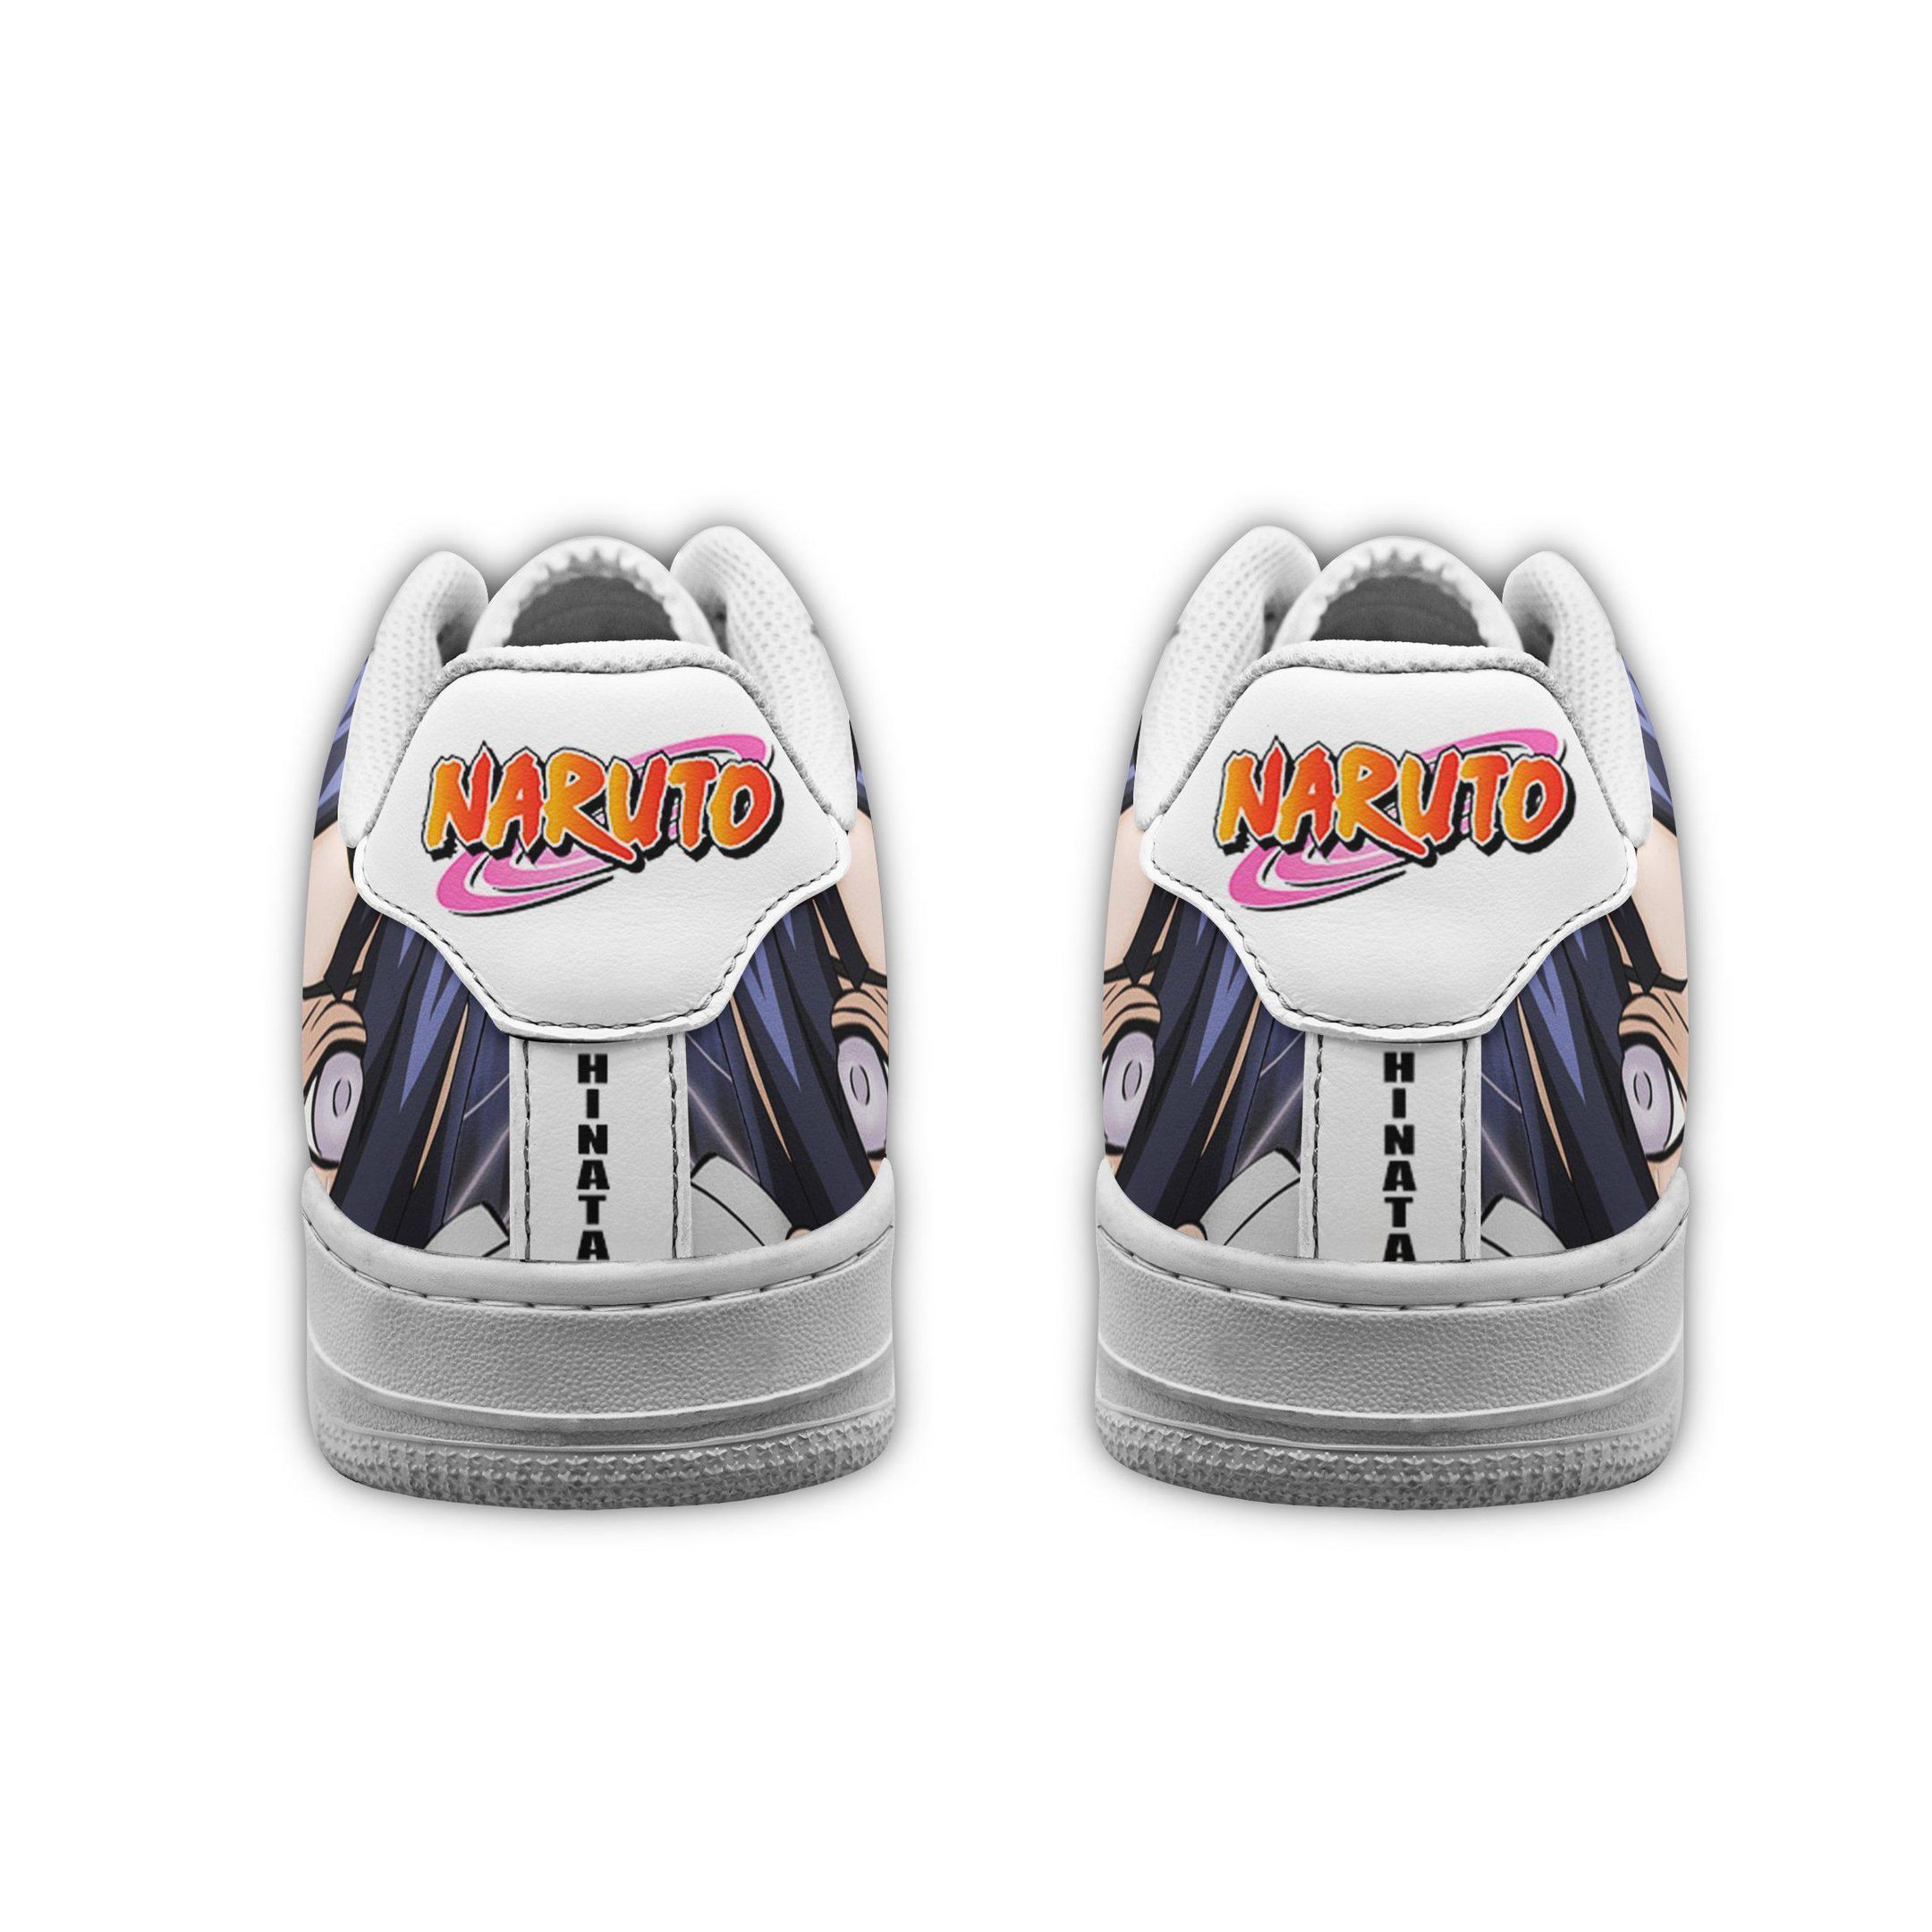 Hinata Hyuga Eyes Air Shoes Naruto Anime Shoes Fan Gift GO1012